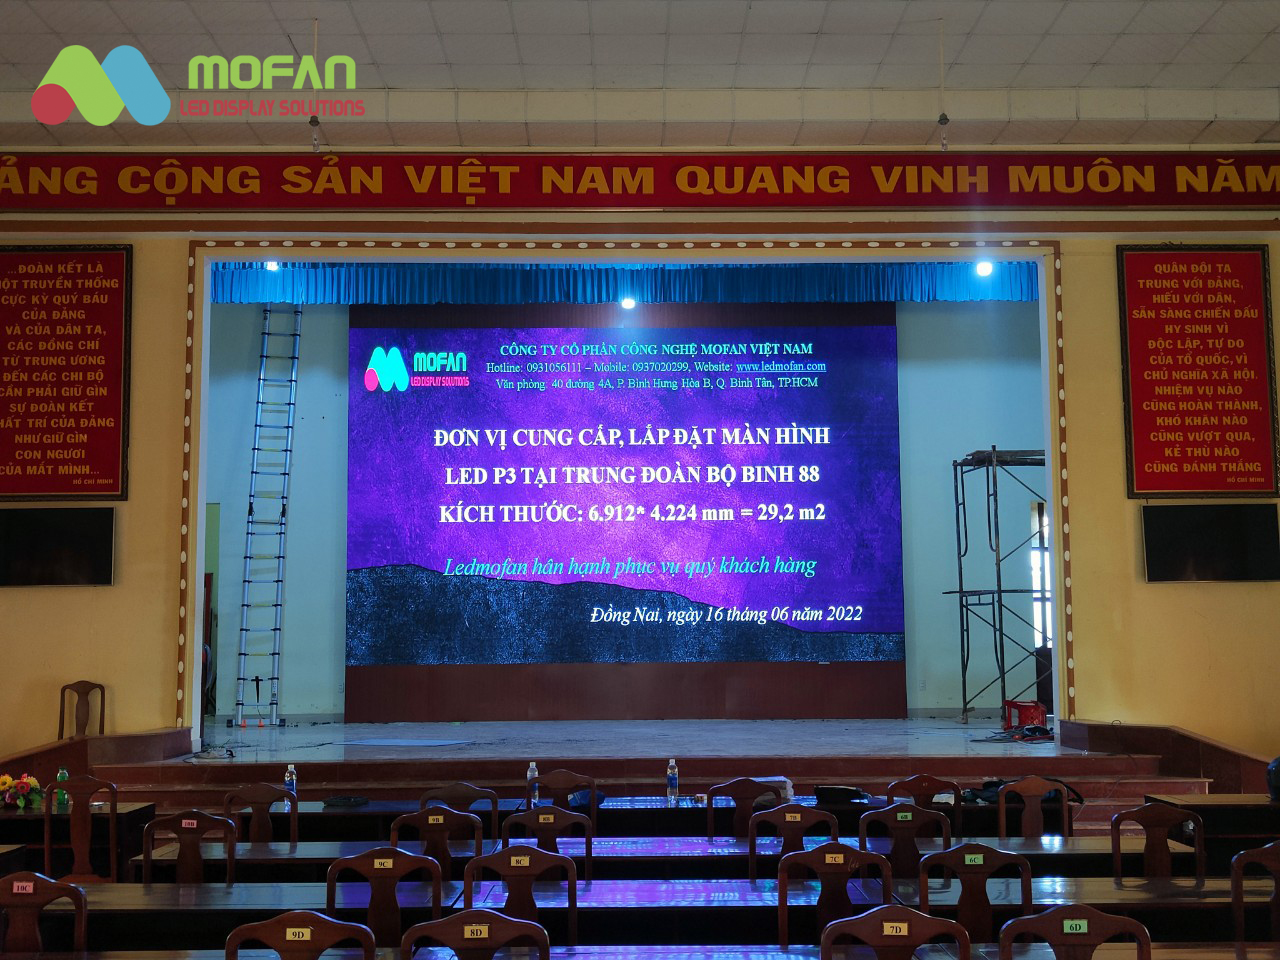 LEDMofan - Thi công màn hình LED uy tín hàng đầu Việt Nam 3